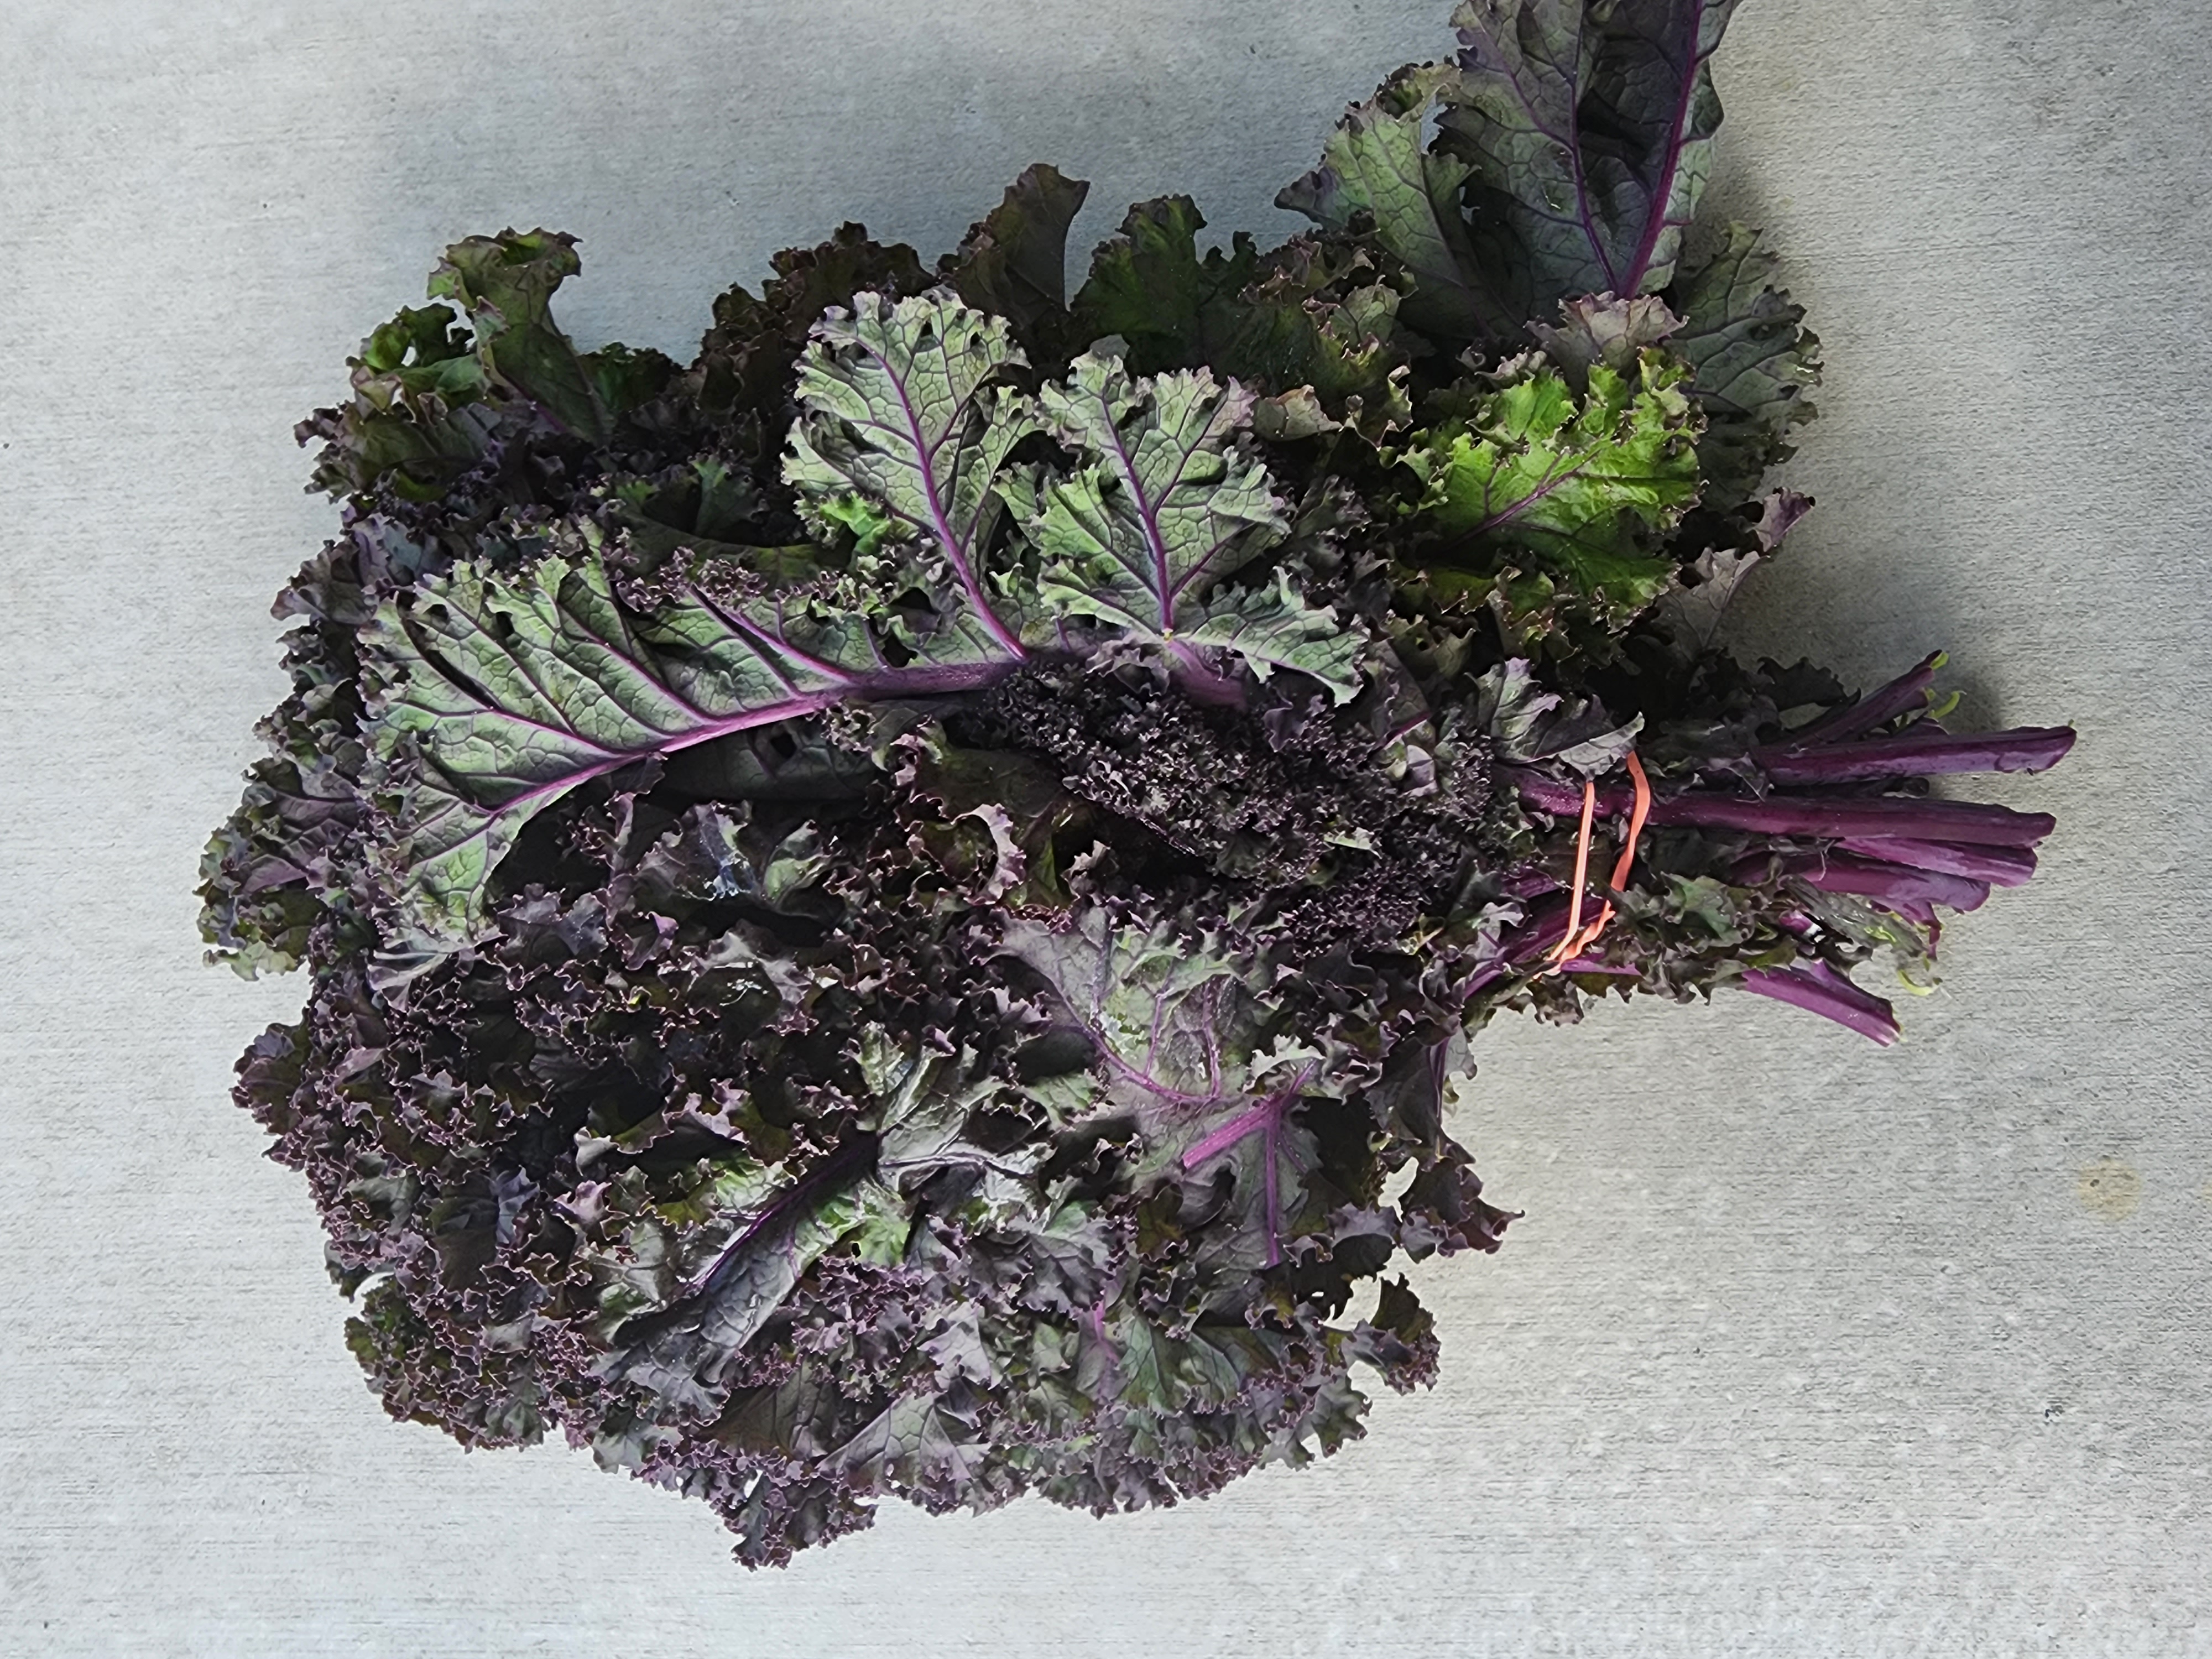 Bunch of Purple Kale